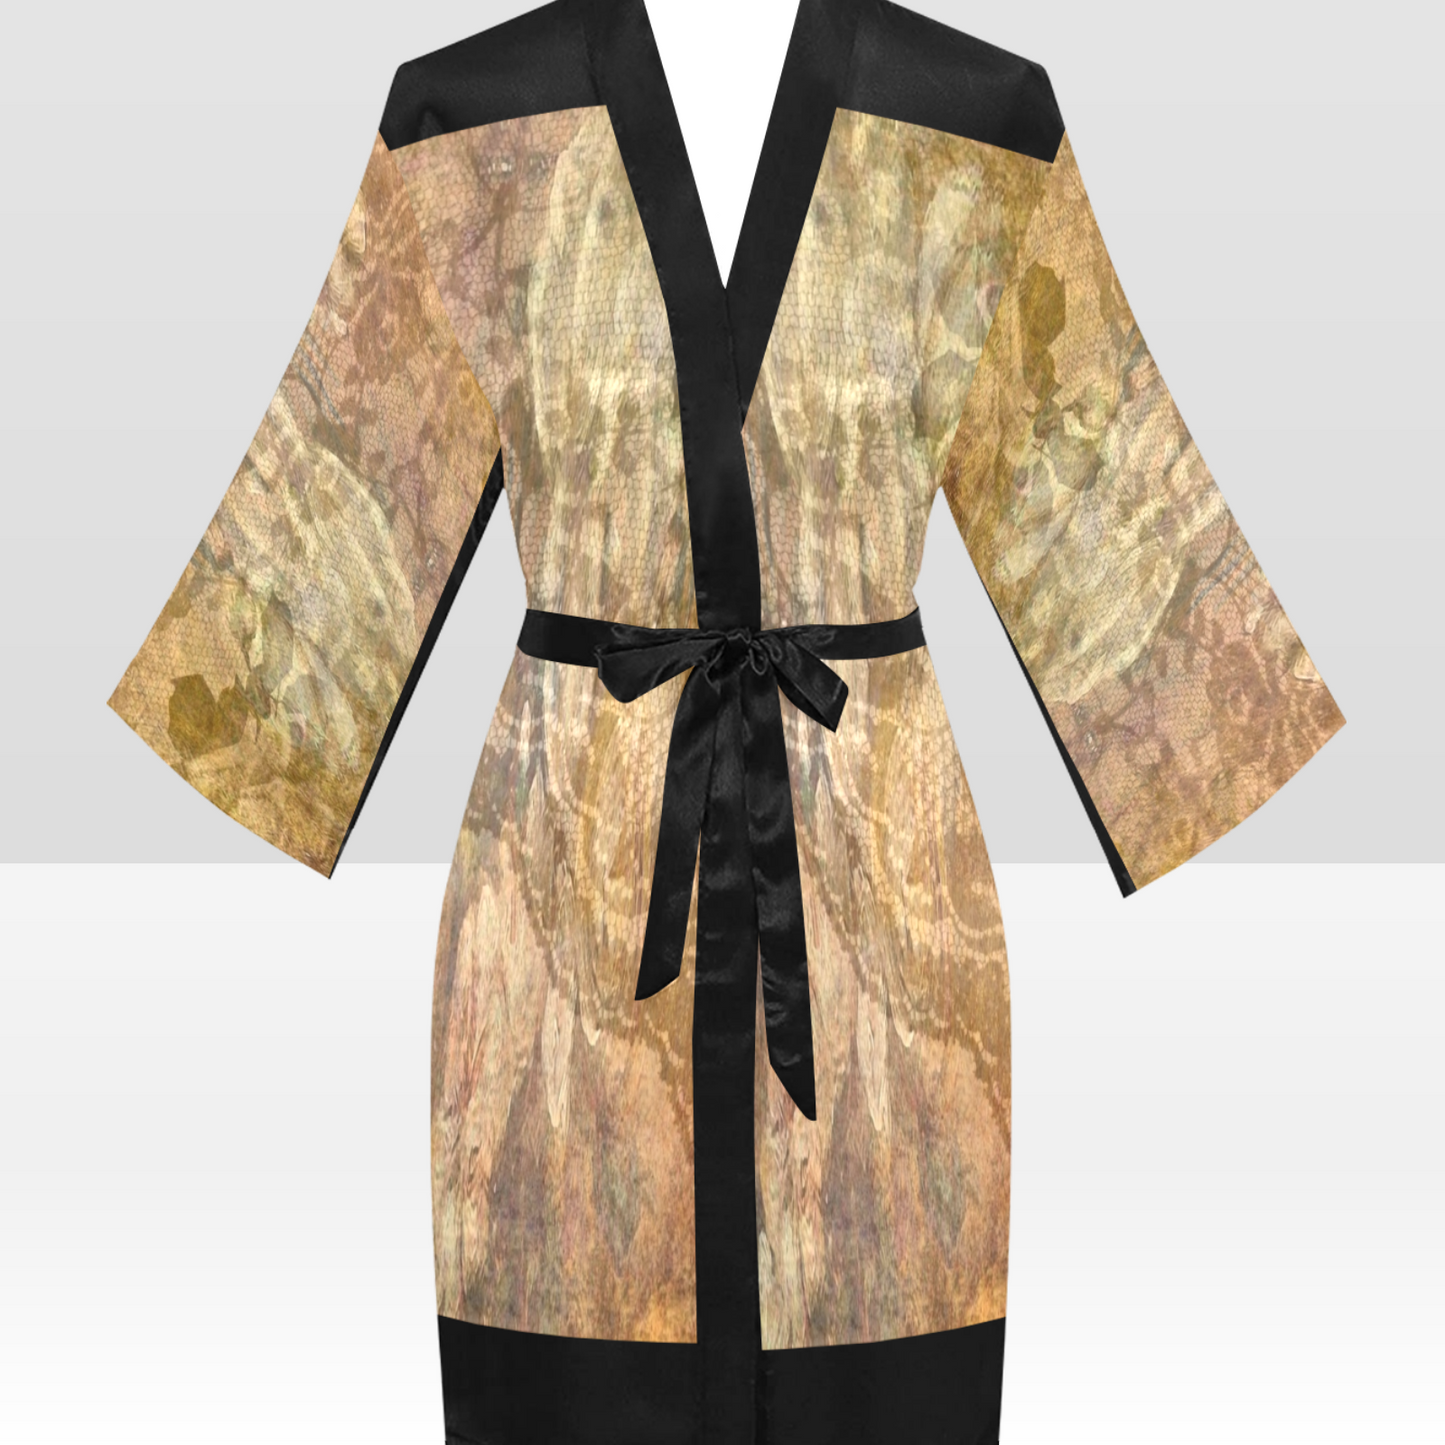 Vintage Floral Kimono Robe, Black or White Trim, Sizes XS to 2XL, Design 17x